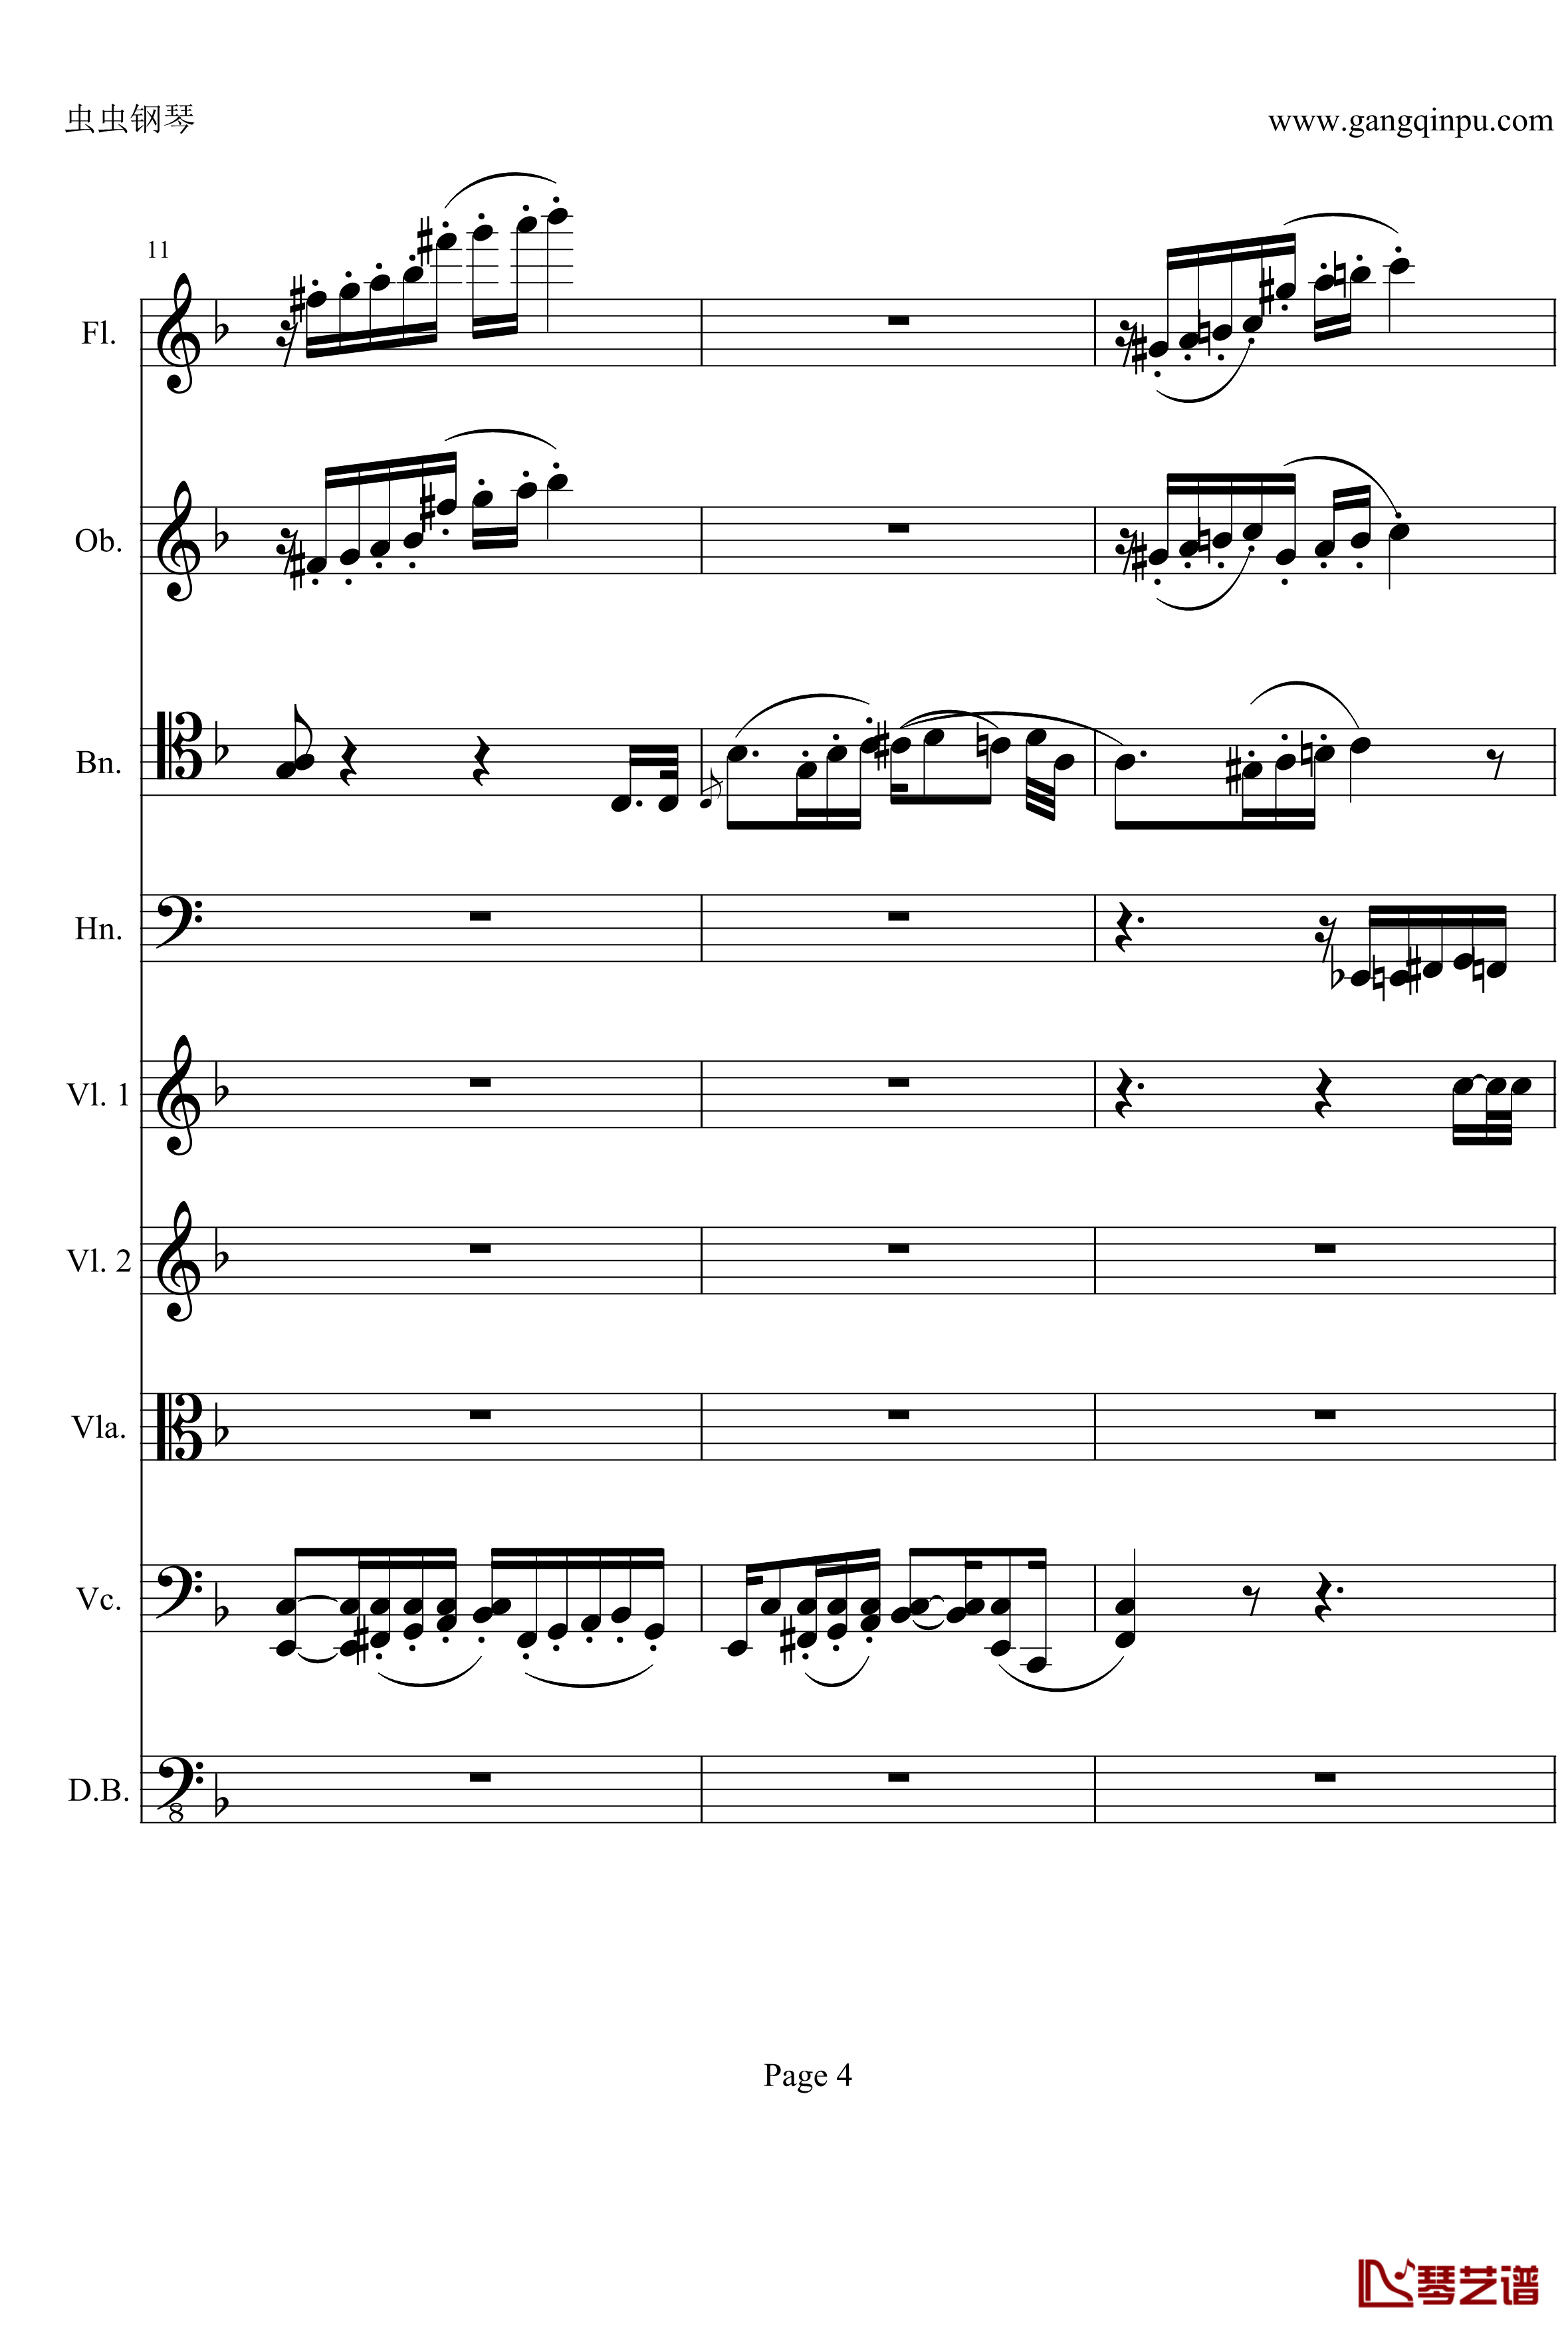 奏鸣曲之交响钢琴谱-第21-Ⅱ-贝多芬-beethoven4